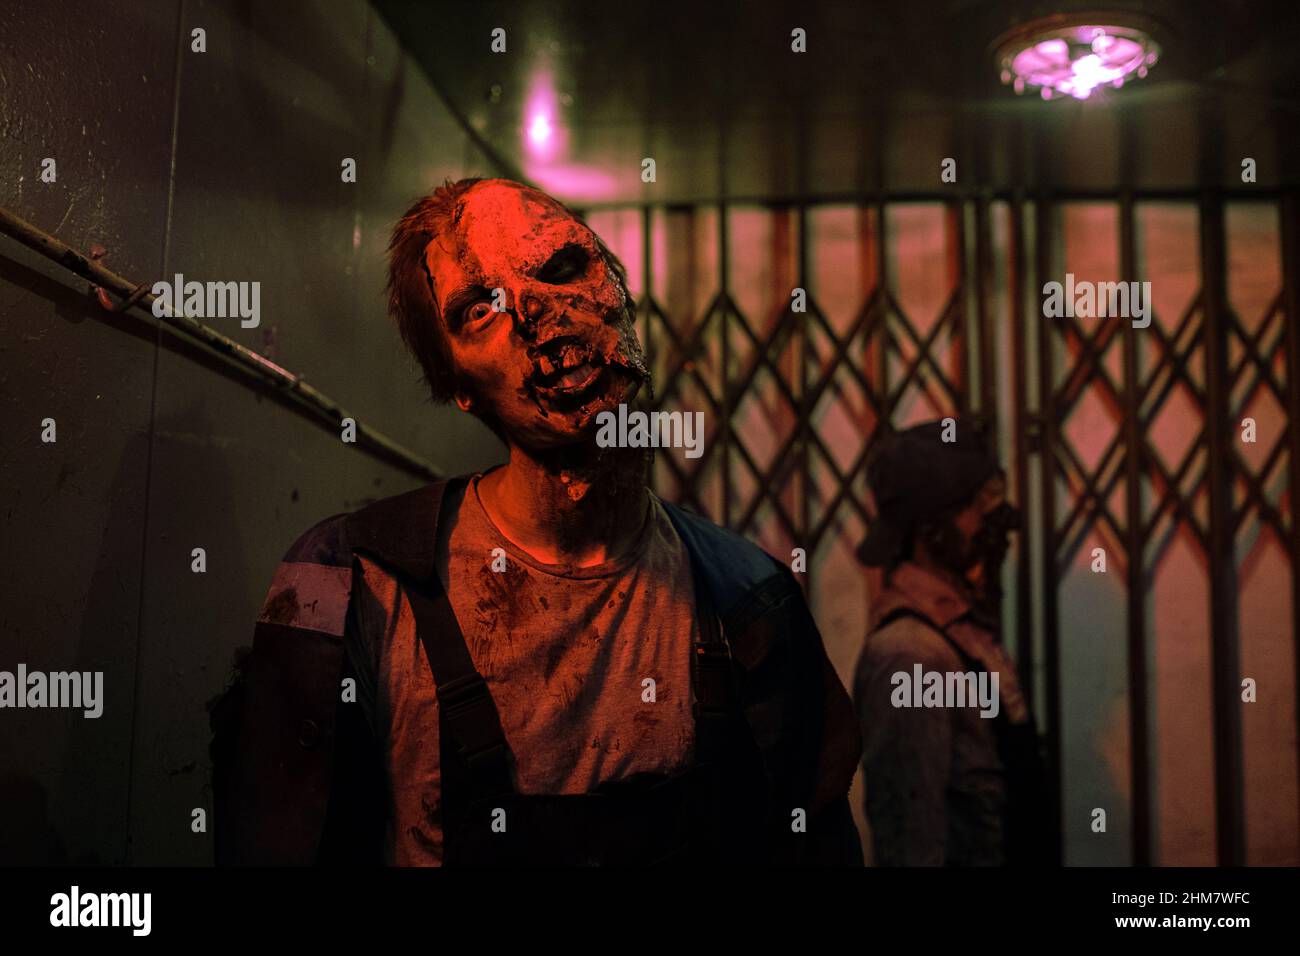 Aufnahme eines männlichen Zombies mit gruseligen Gesichtern, der in einem dunklen, von rotem Licht beleuchteten Flur zur Kamera läuft, um Platz zu kopieren Stockfoto